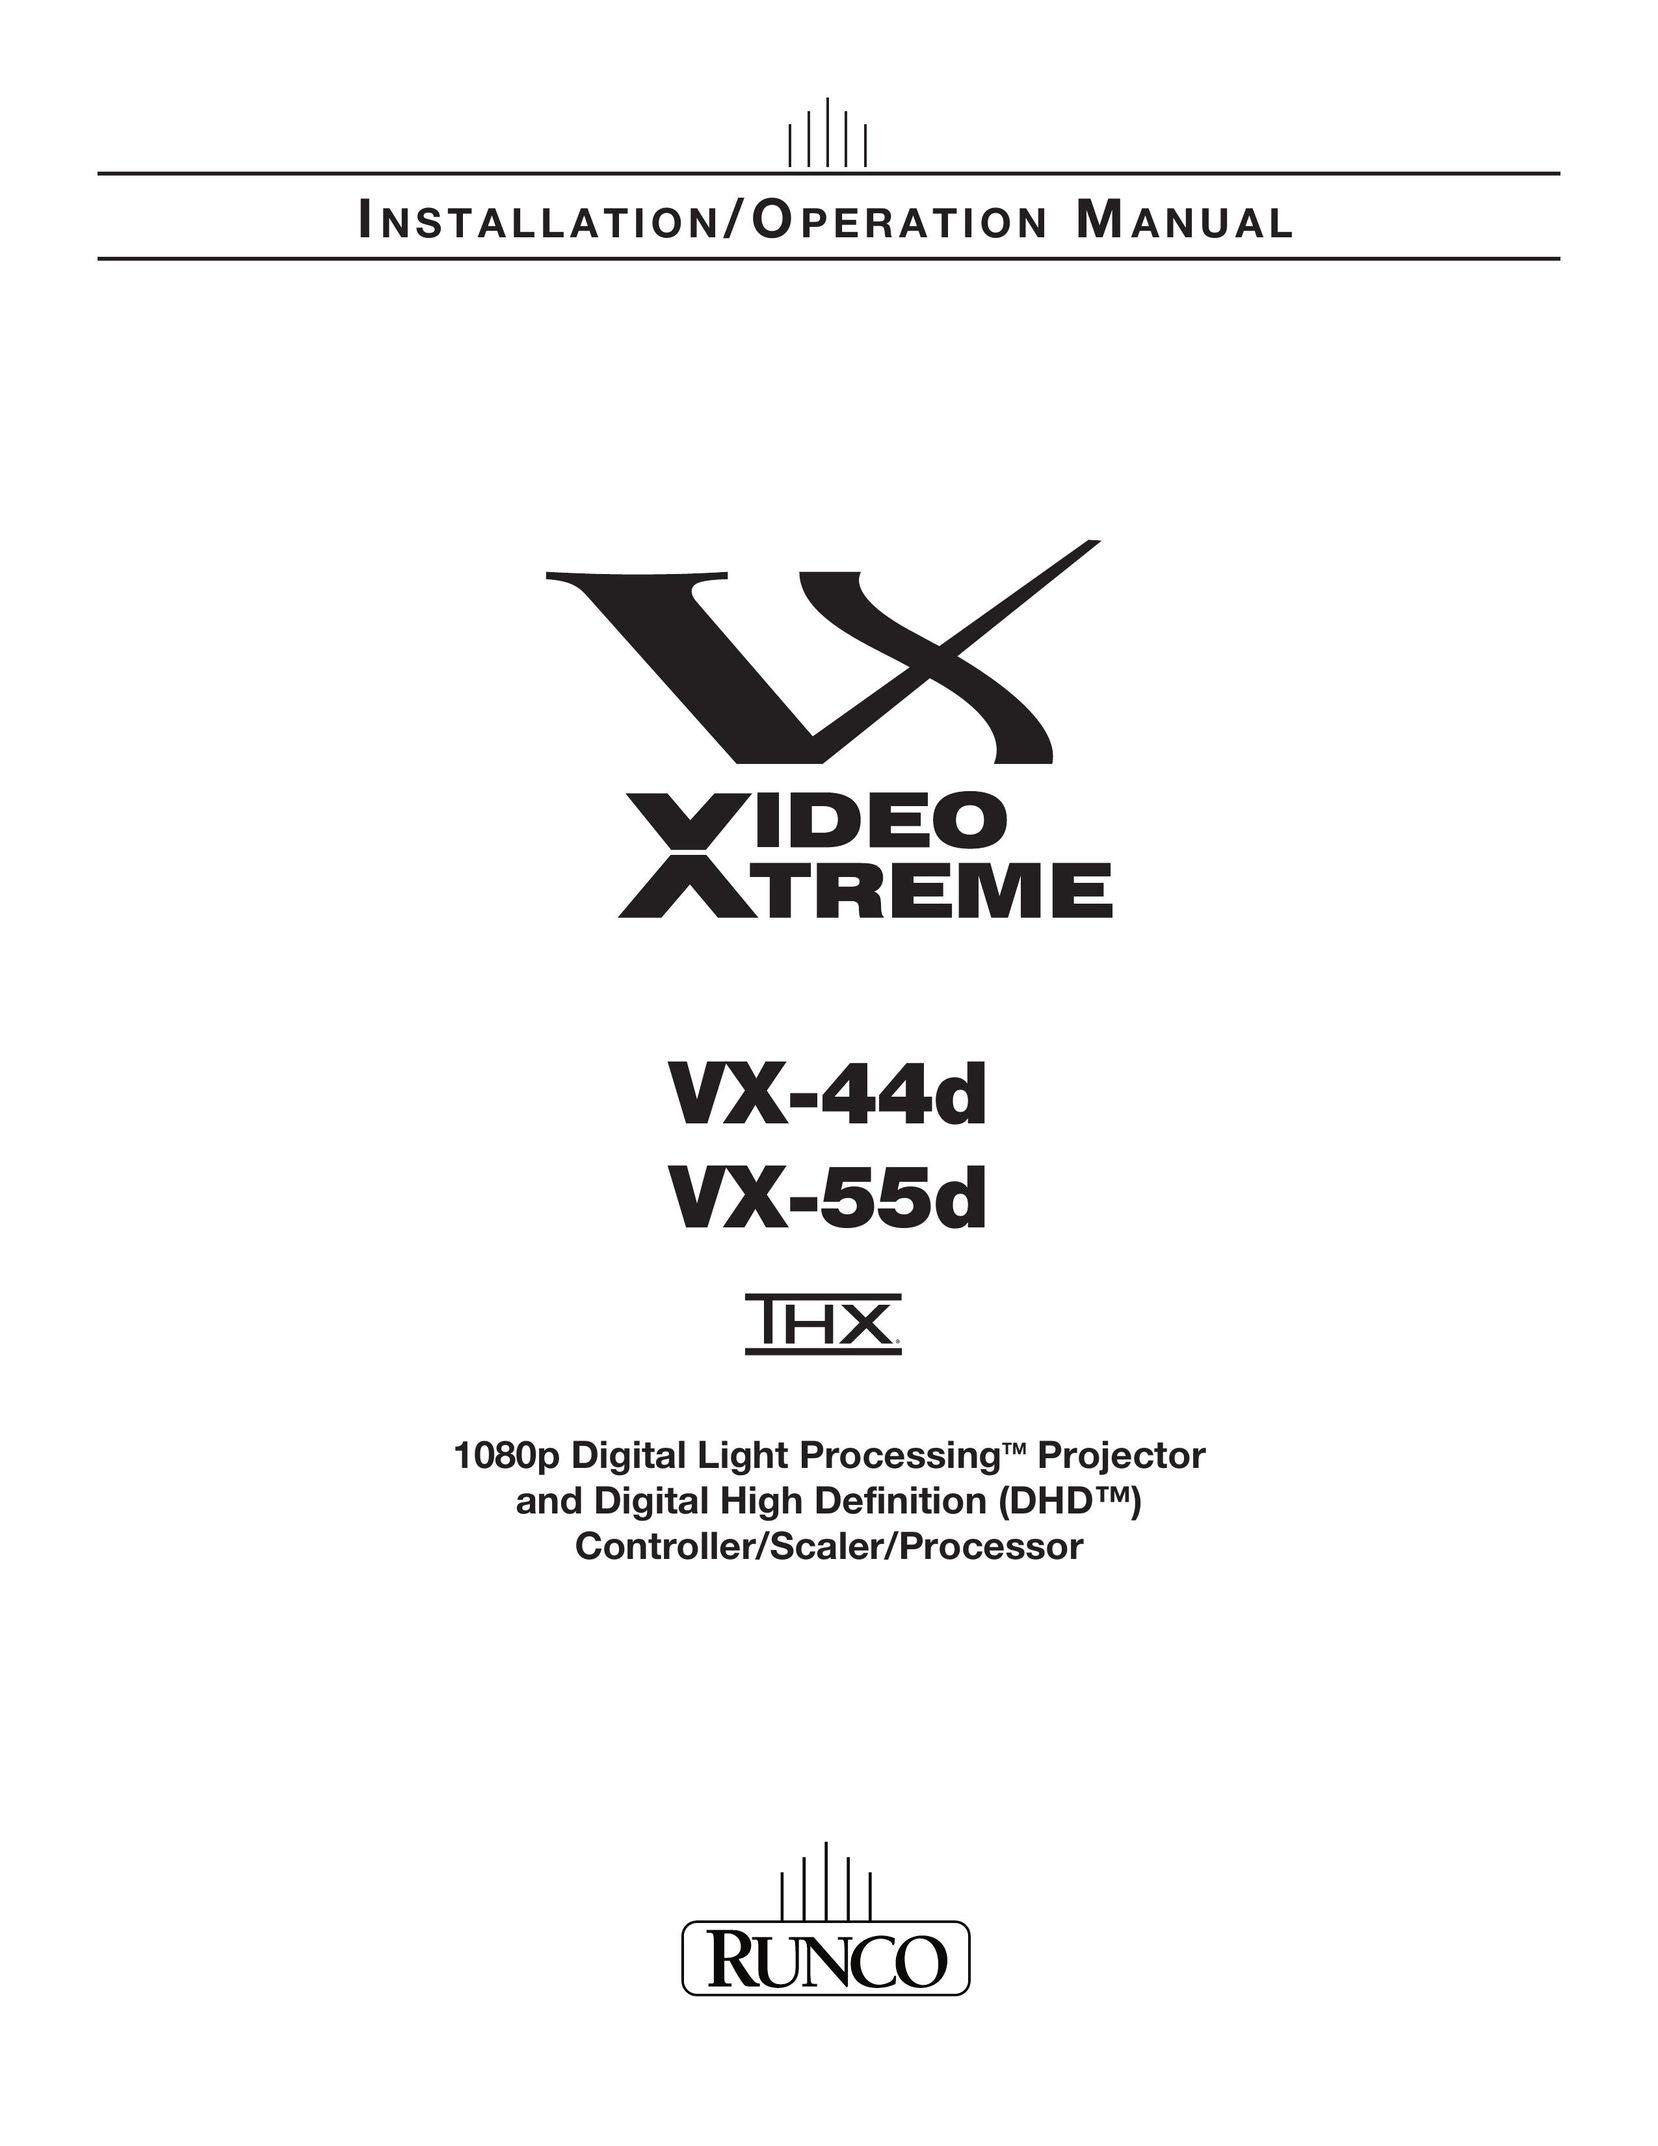 Runco VX-44D Projector User Manual